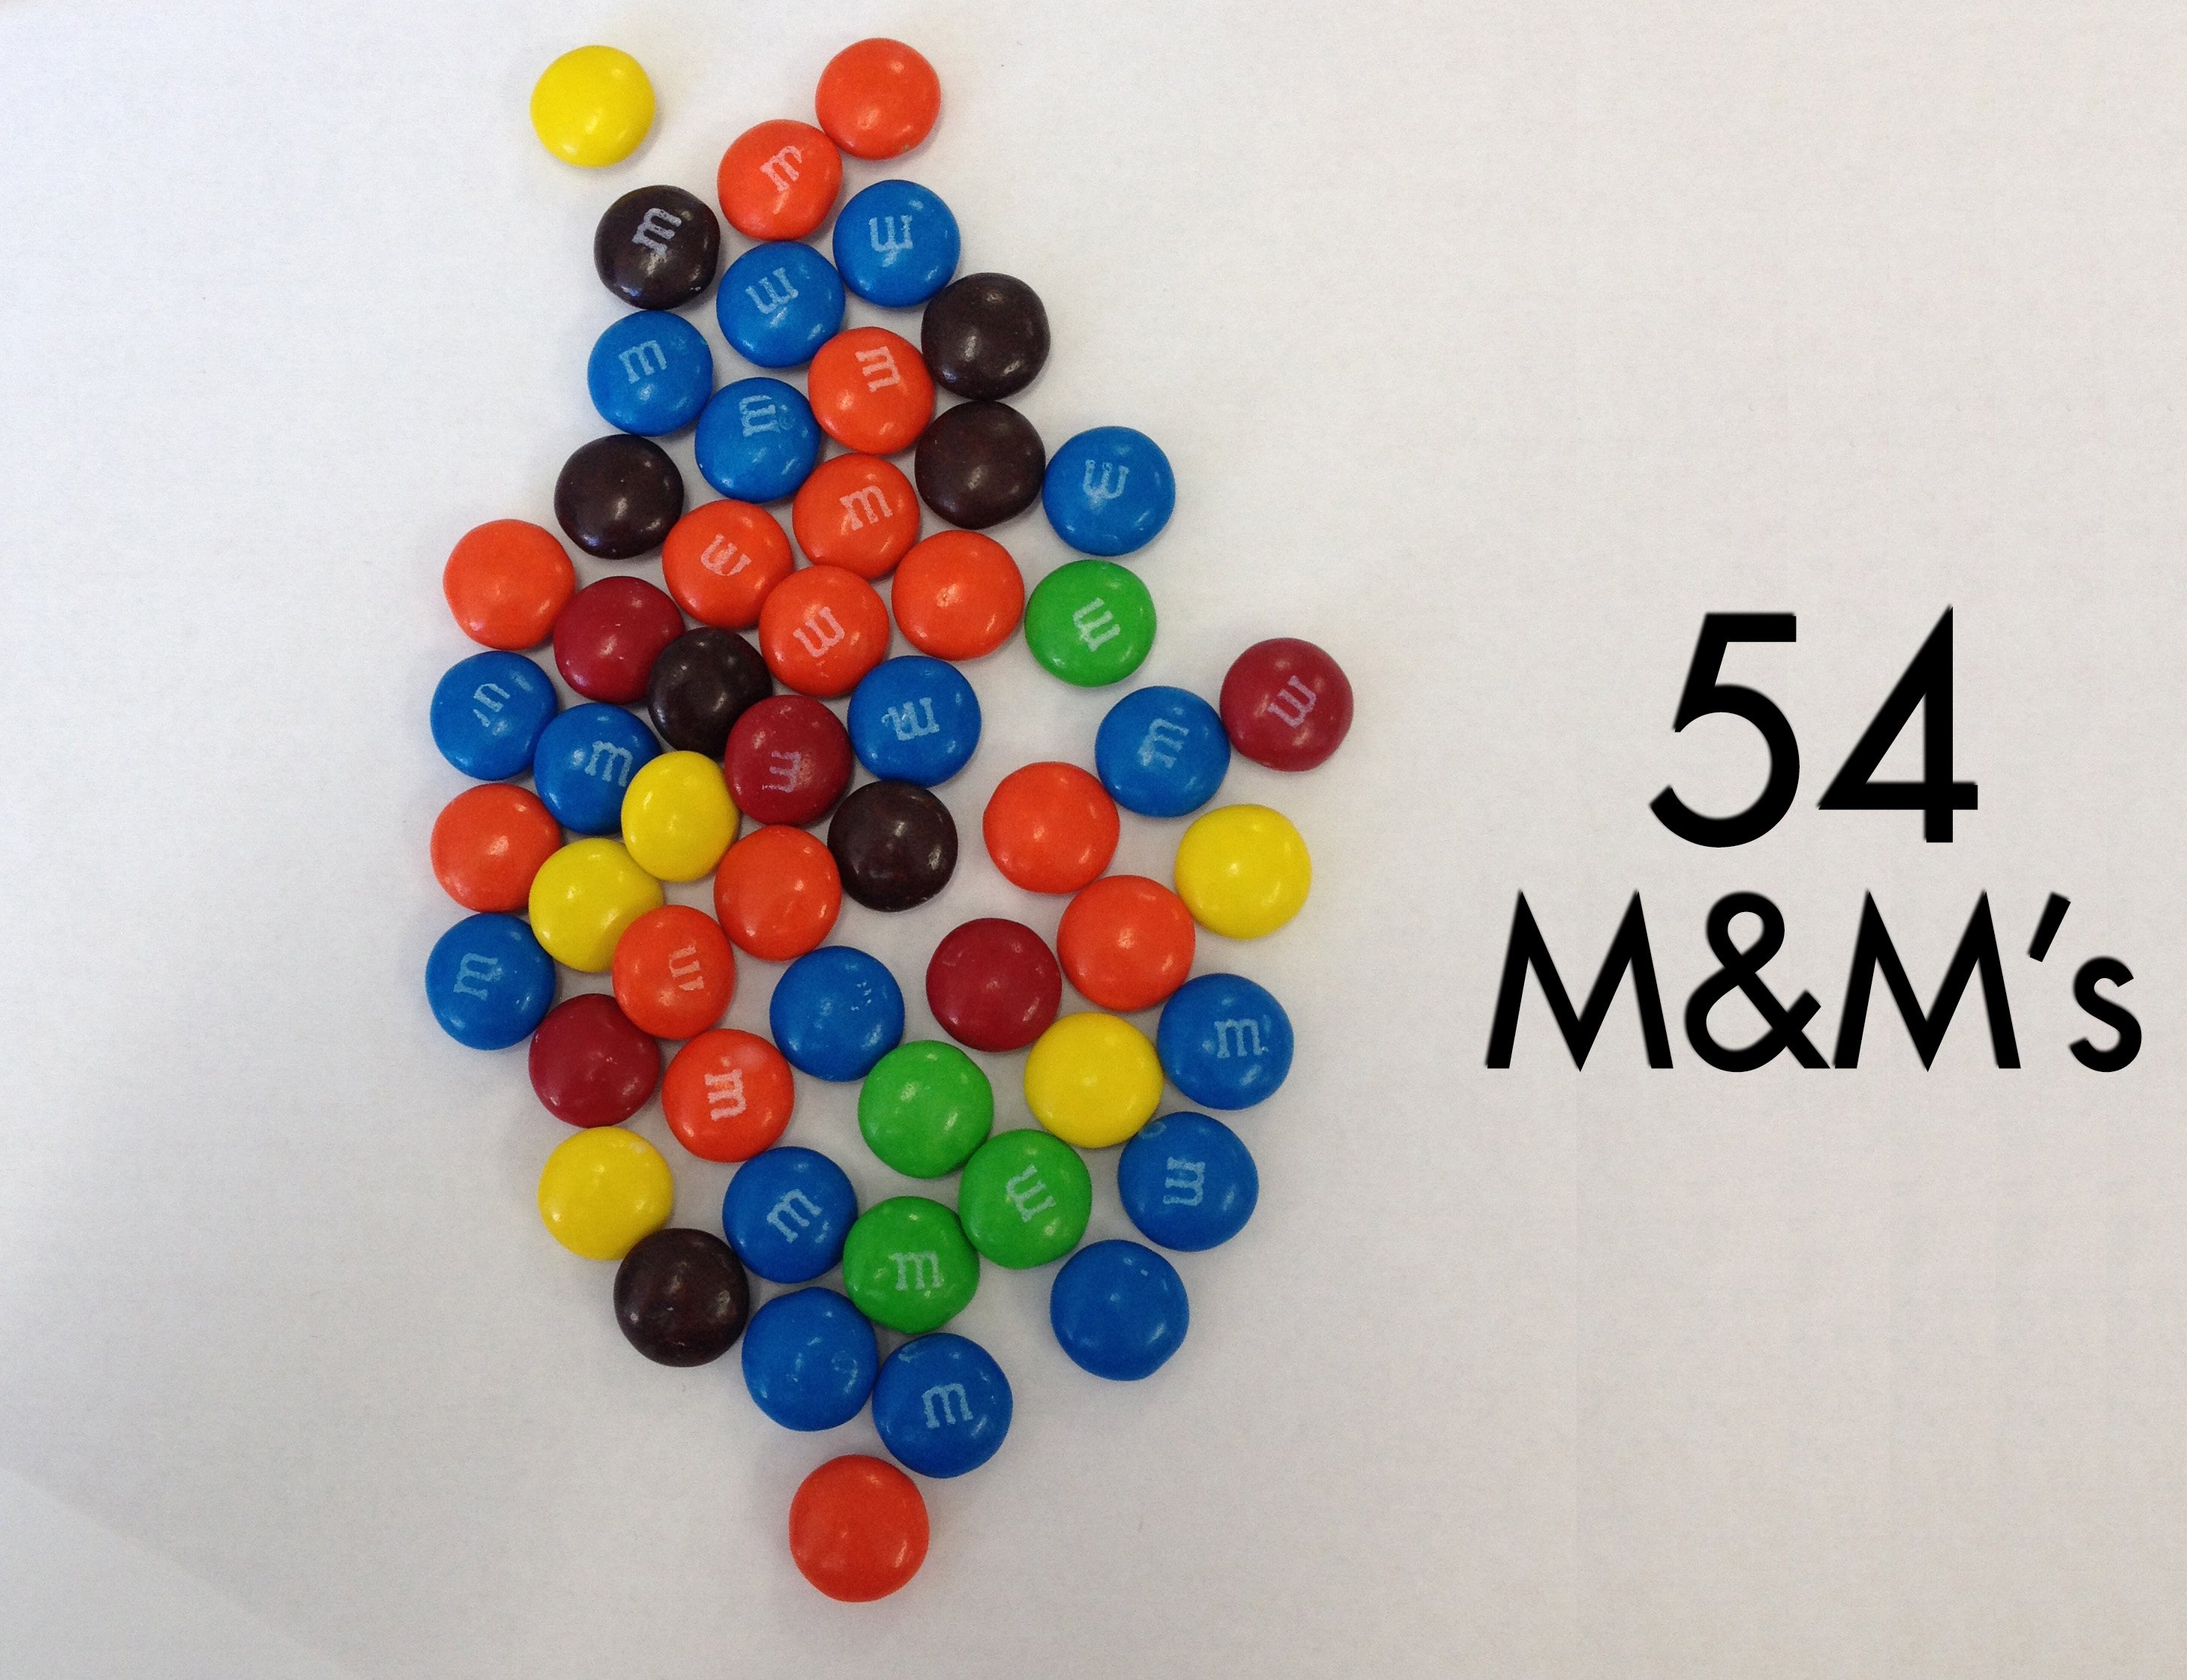 M&M's – When Math Happens